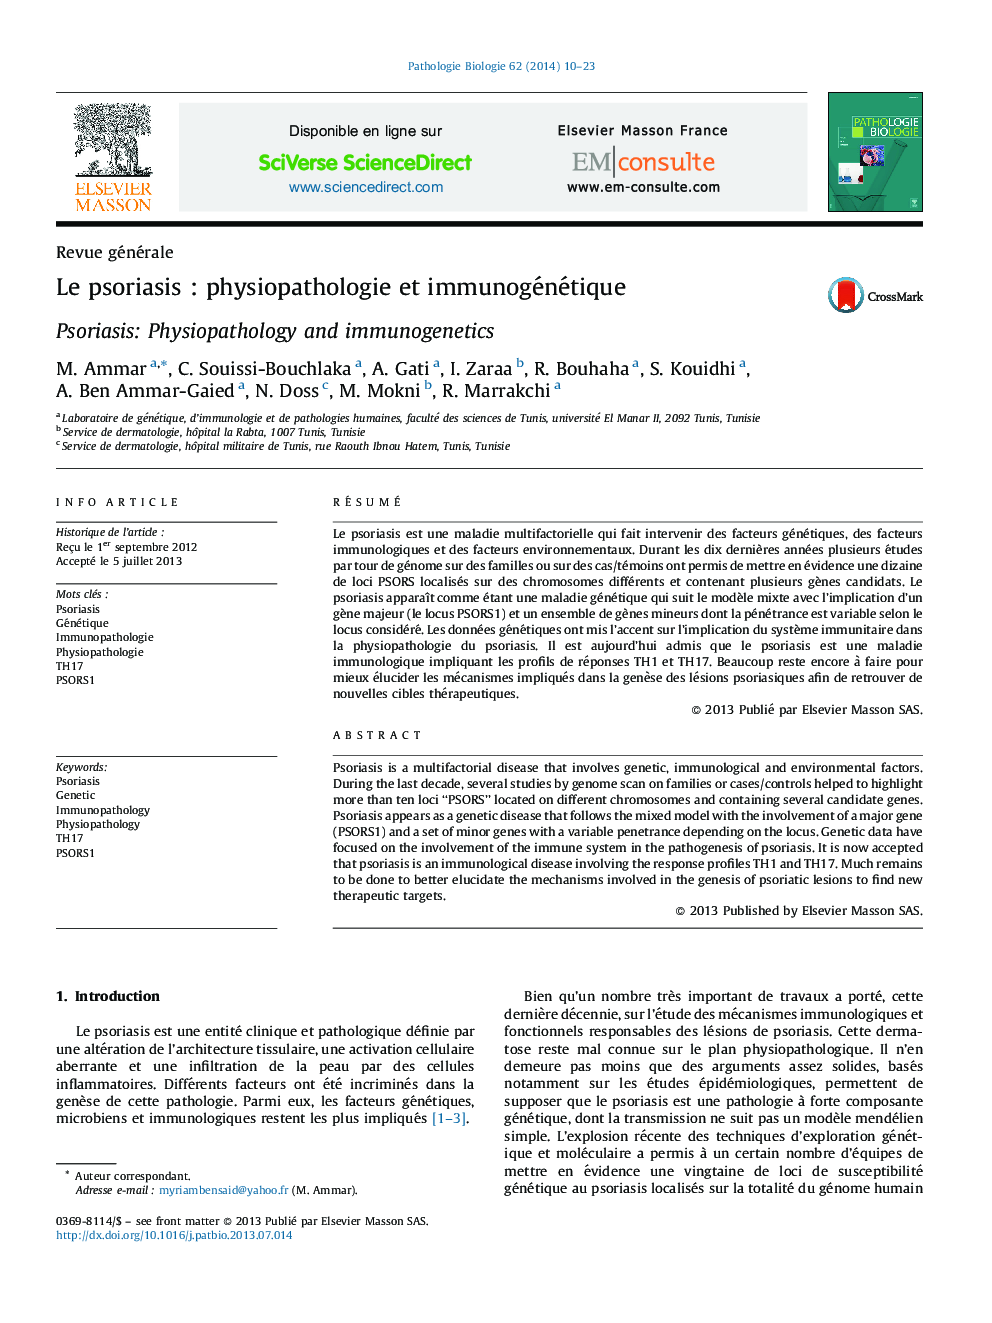 Le psoriasis : physiopathologie et immunogénétique